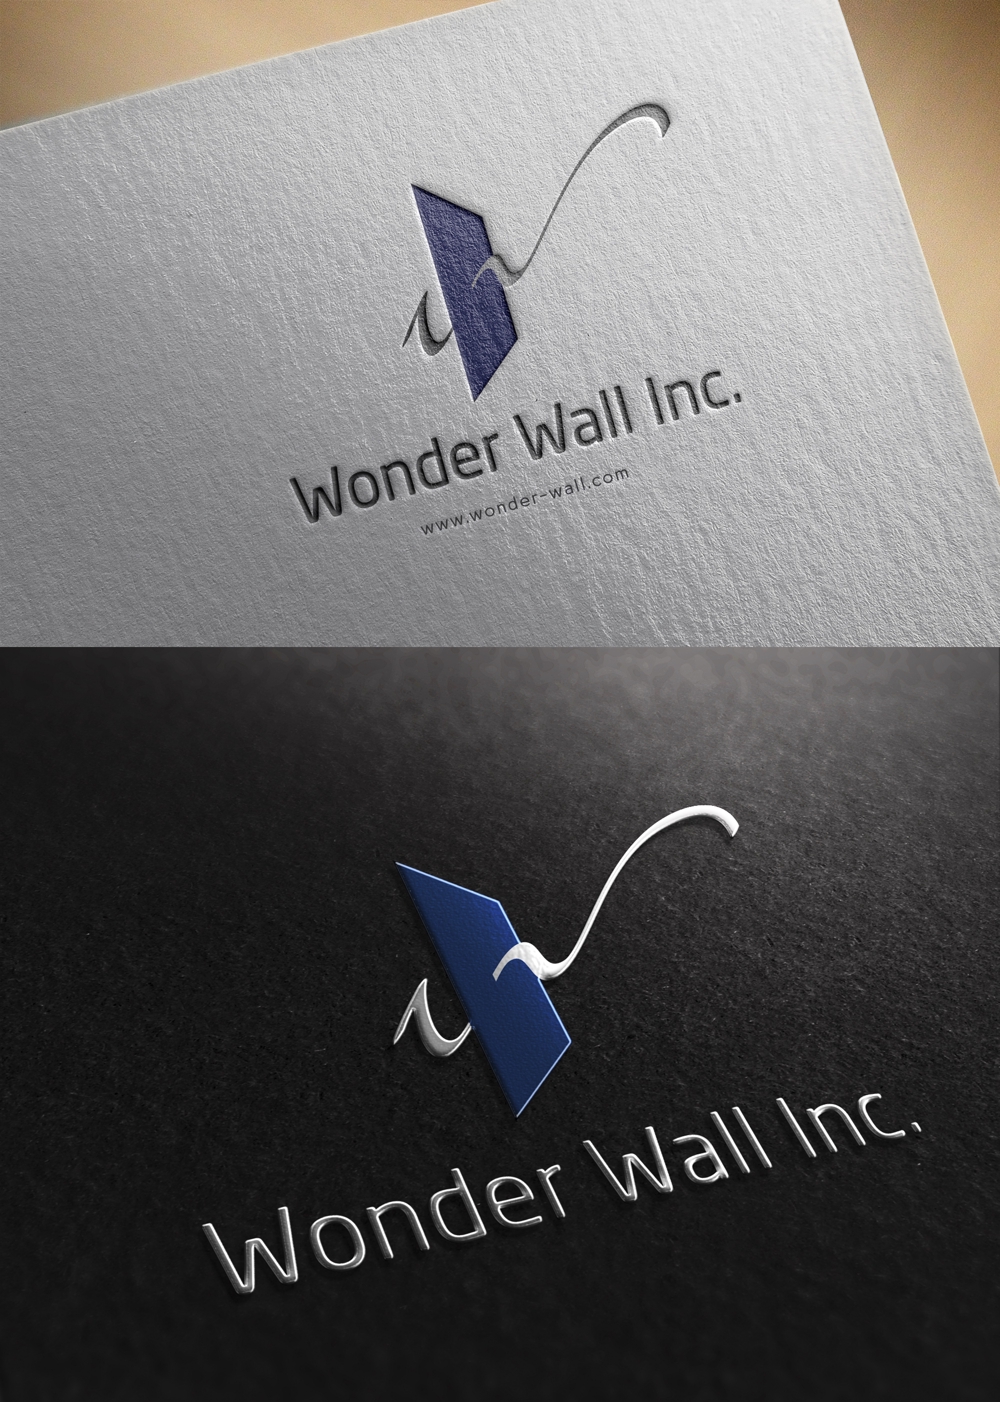 新規で設立する企業「社名：株式会社ワンダーウォール」のロゴ